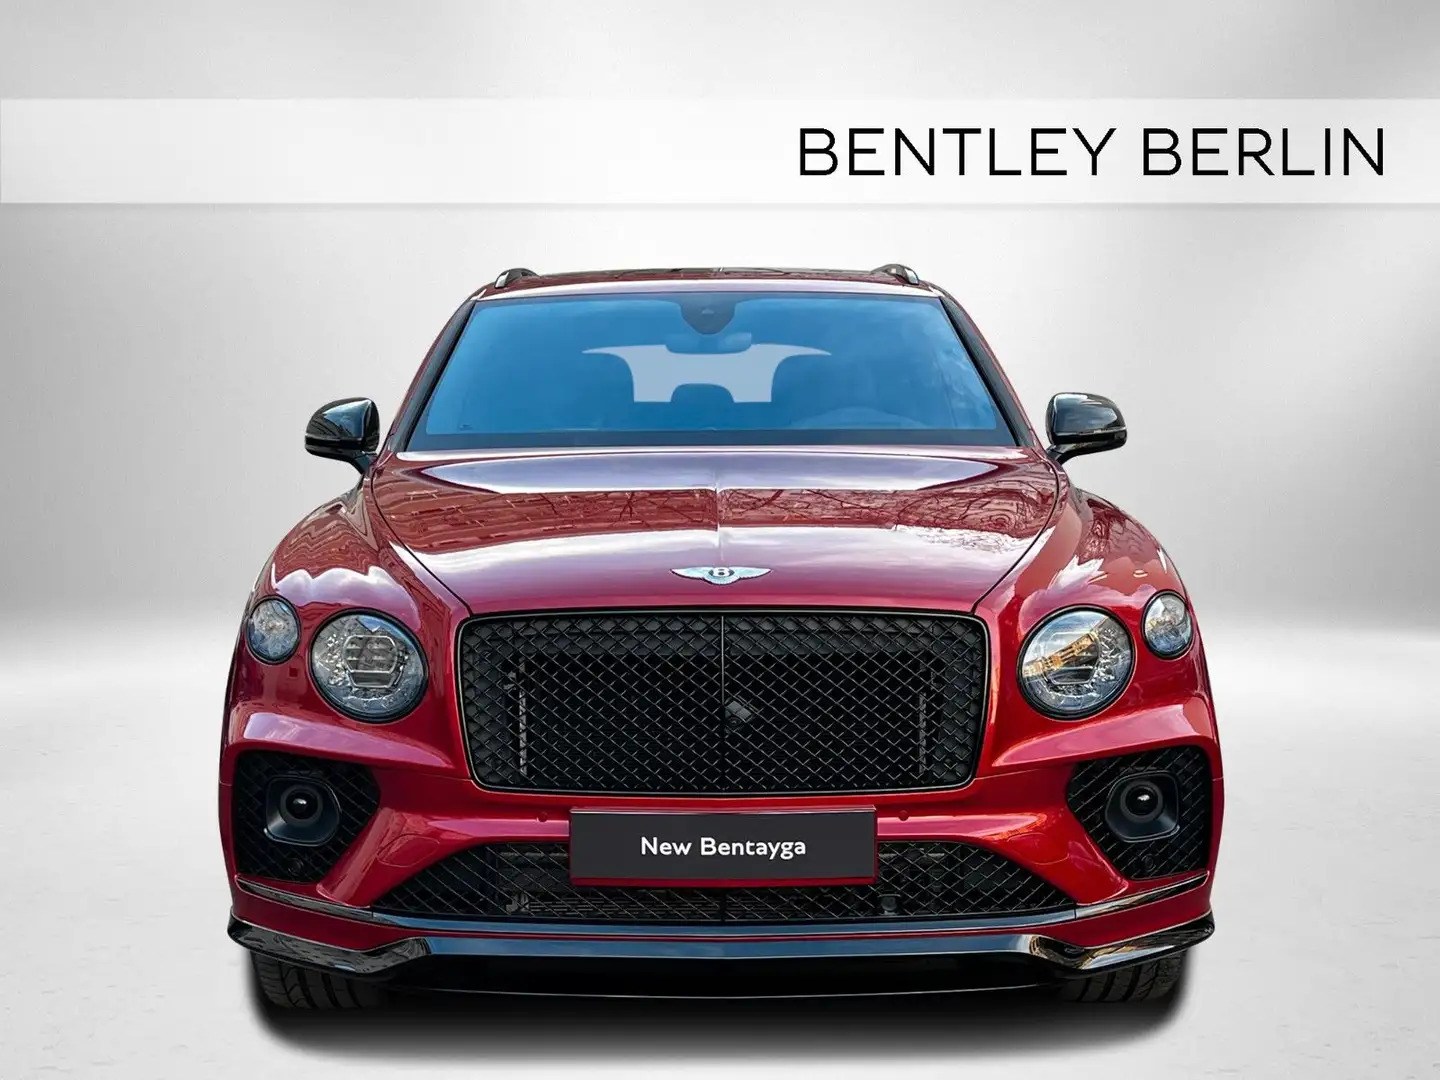 Bentley Bentayga S V8  - STONE VENEER - BENTLEY BERLIN - Red - 2